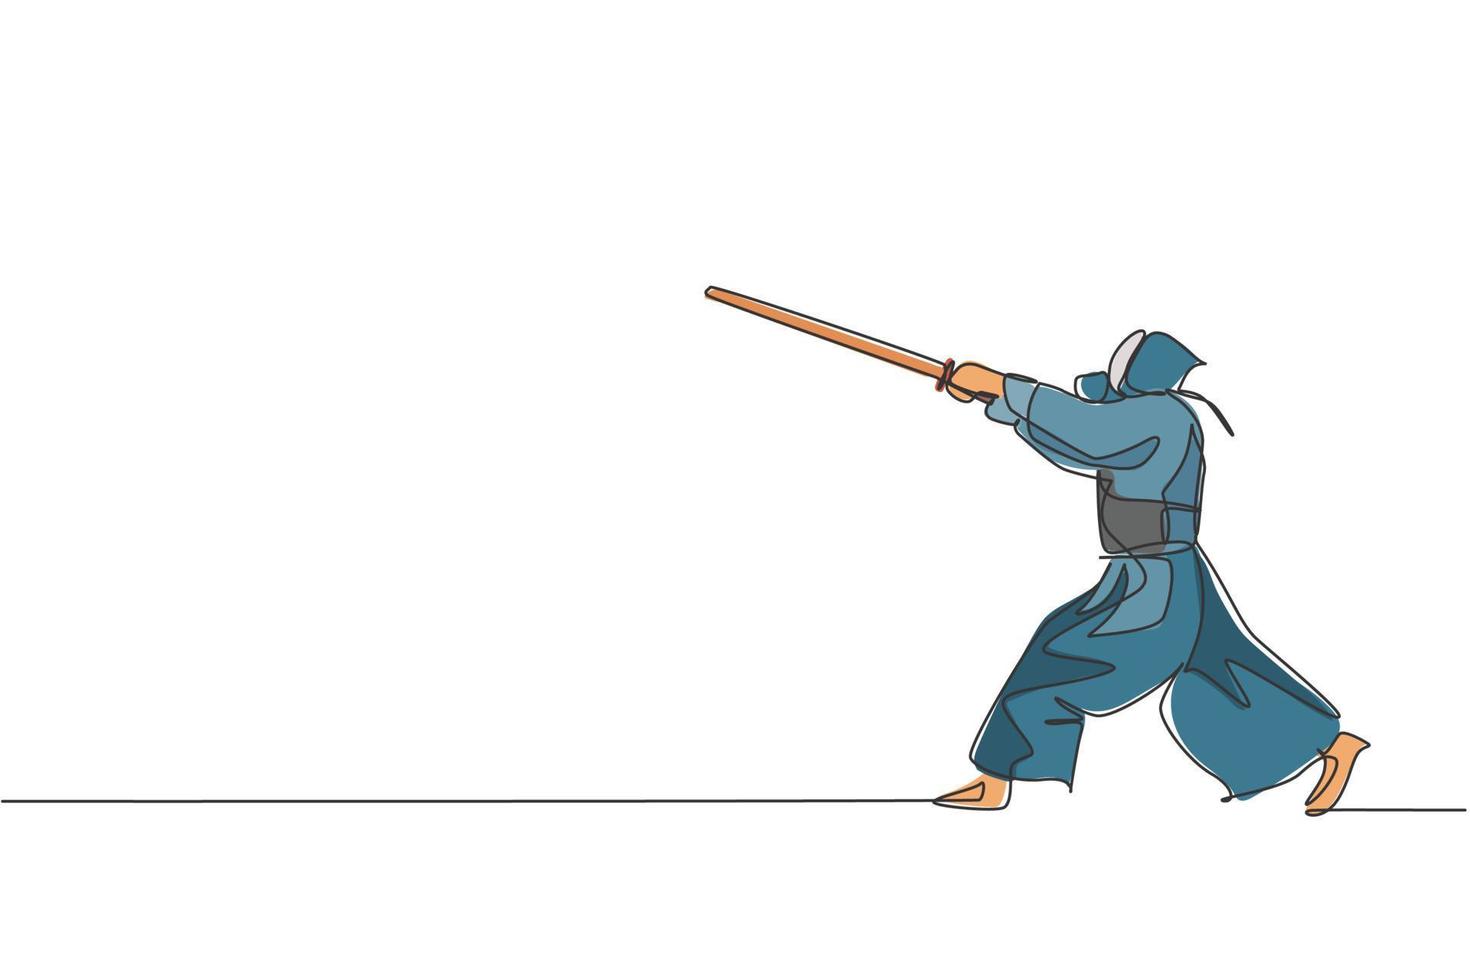 una sola línea de dibujo enérgico hombre ejercicio habilidad de ataque en el juego de kendo con espada de madera en el centro de gimnasio ilustración vectorial gráfica. concepto de deporte de lucha combativa. diseño moderno de dibujo de línea continua vector